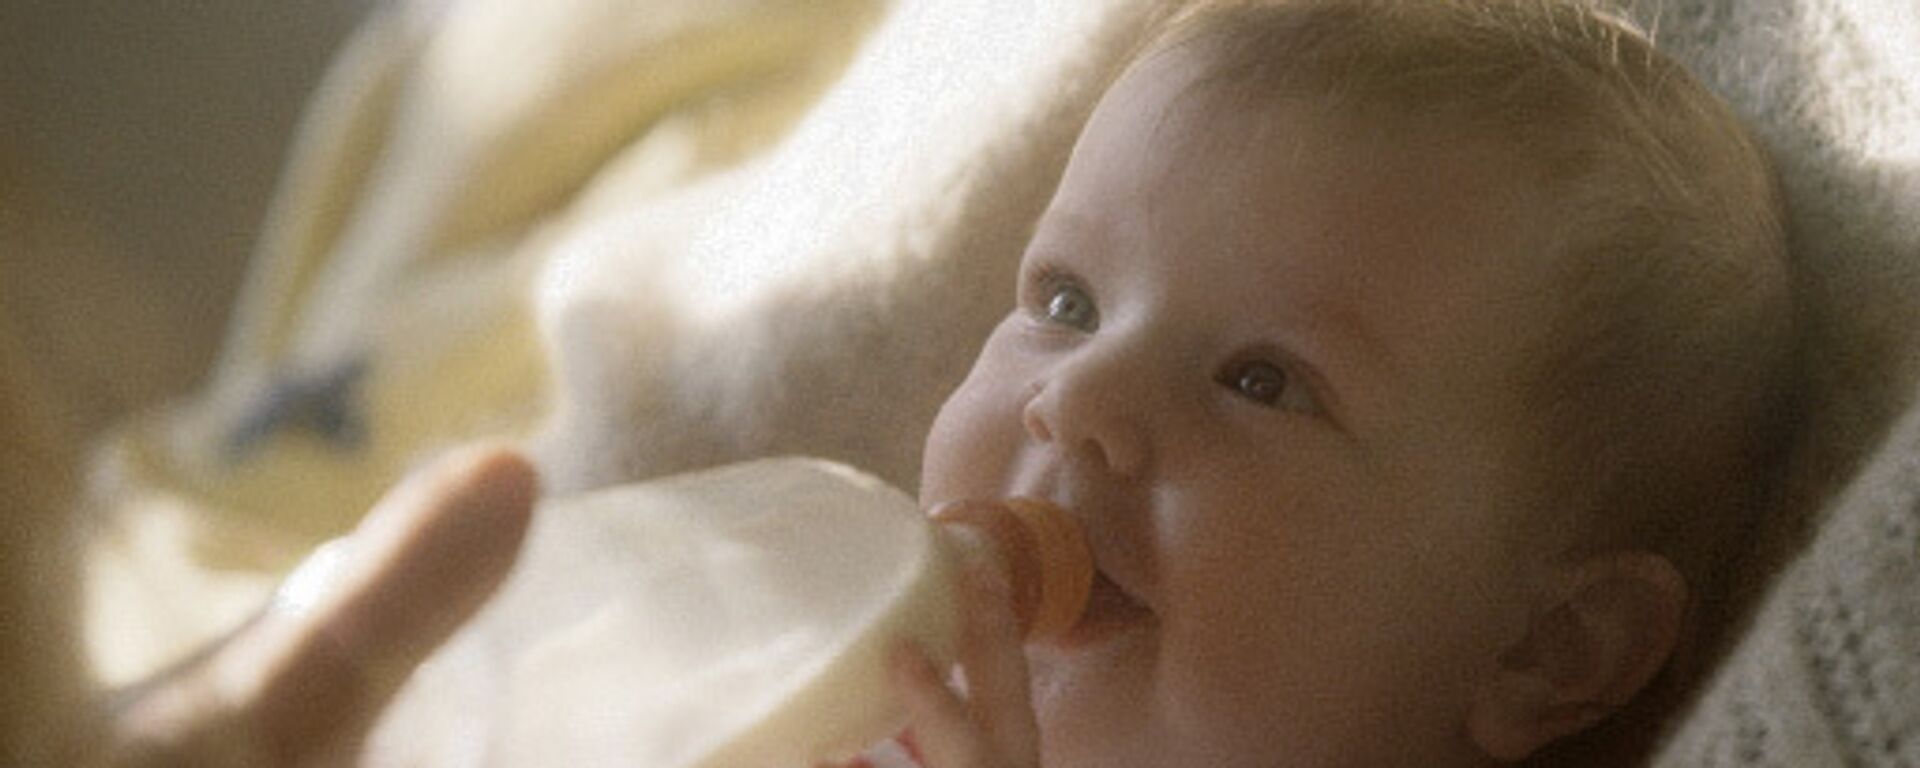 Expertos suecos detectan niveles elevados de manganeso en alimentos infantiles - Sputnik Mundo, 1920, 27.01.2011